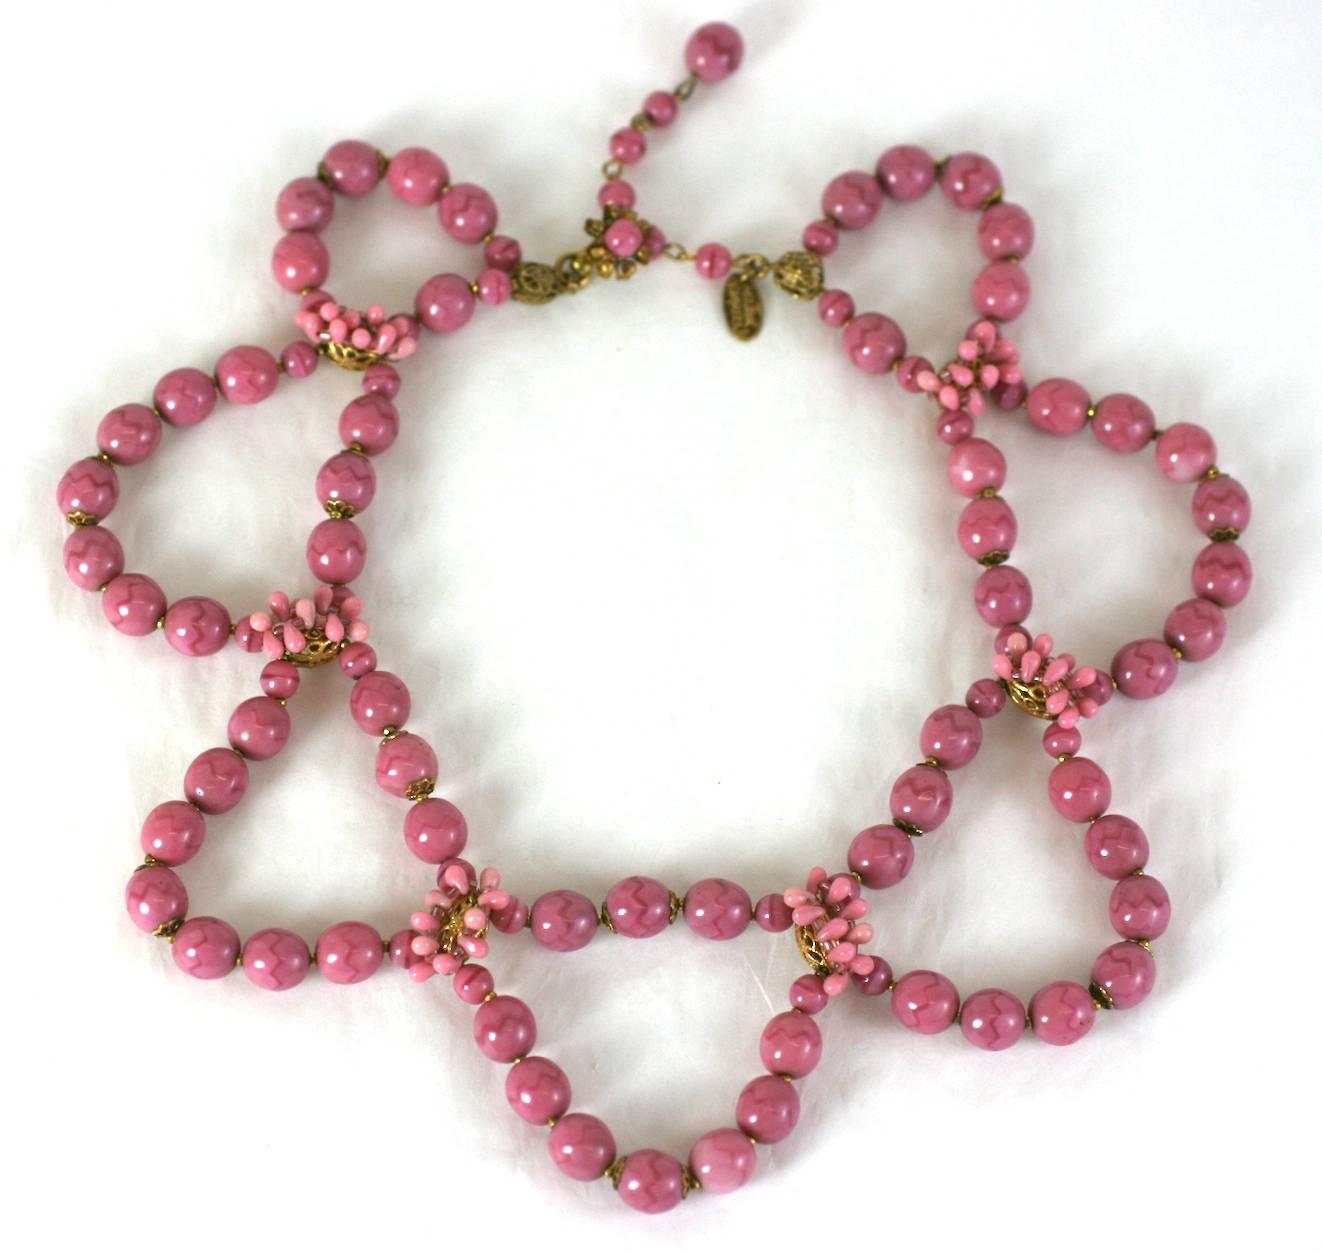 Collier de Miriam Haskell composé de perles rondes en pate de verre rose poussiéreux à motifs de puzzle. Chaque sac est séparé par des filigranes dorés russes cousus à la main avec des micro-gouttes de verre rose poussiéreux.  années 1950, USA. 